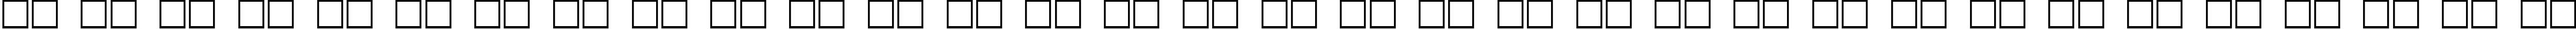 Пример написания русского алфавита шрифтом Optima Cyr Bold